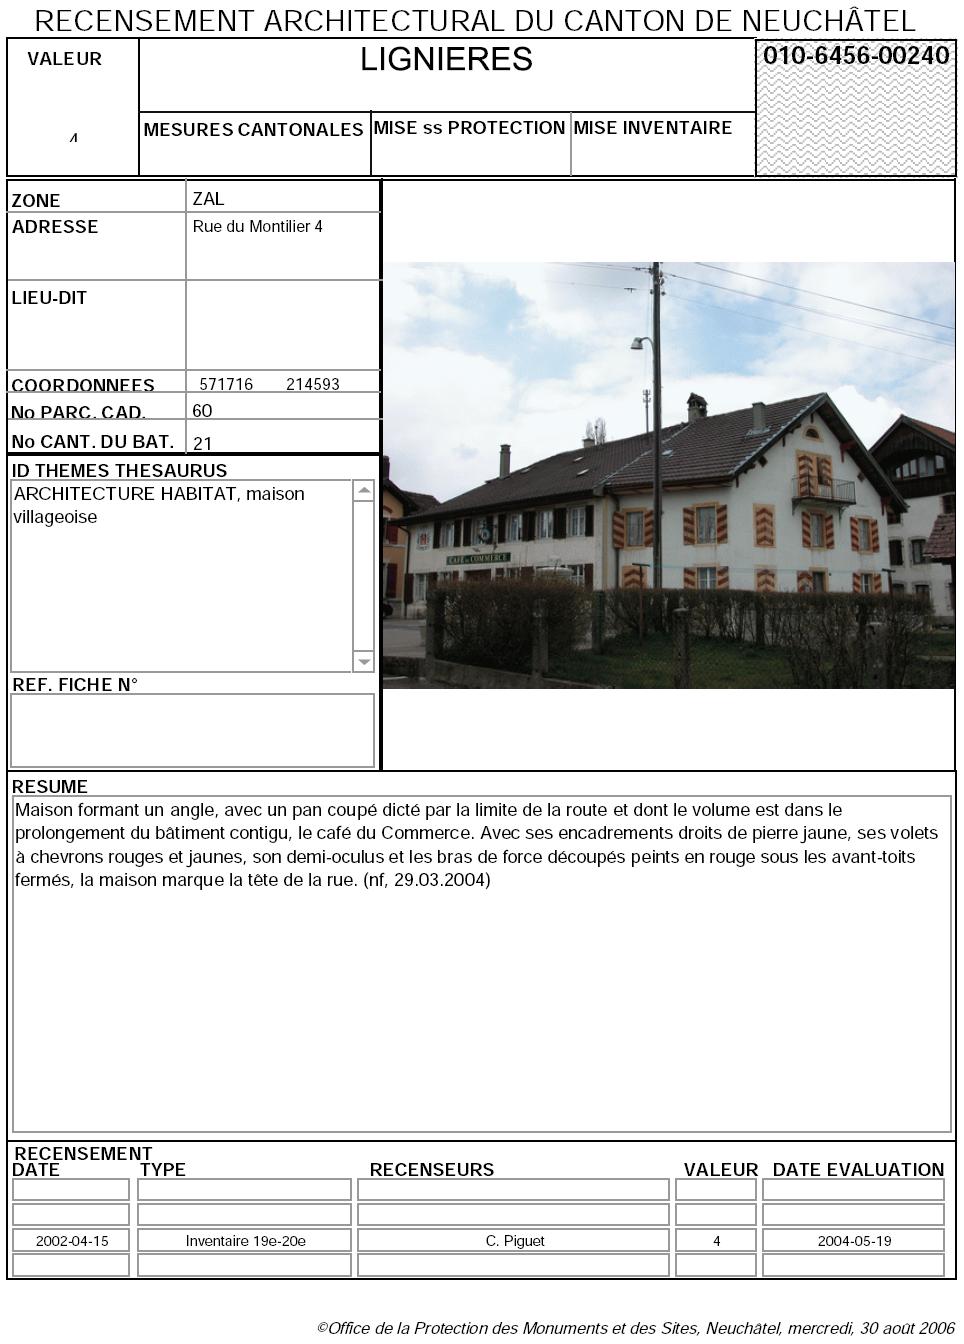 Recensement architectural du canton de Neuchâtel: Fiche 010-6456-00240